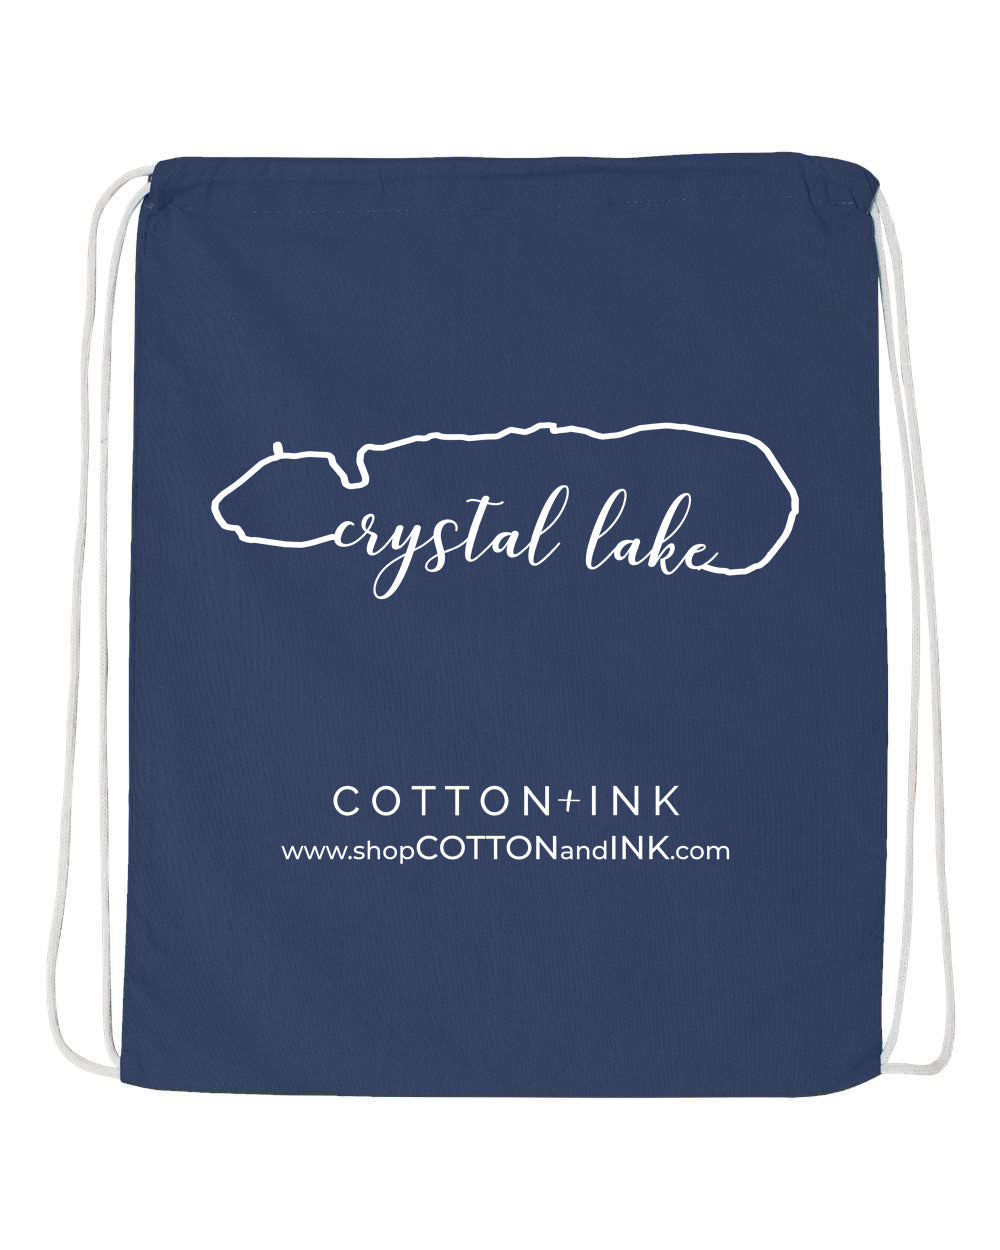 IN STOCK NOW! - Lake Life Crystal Lake Drawstring Bag - navy